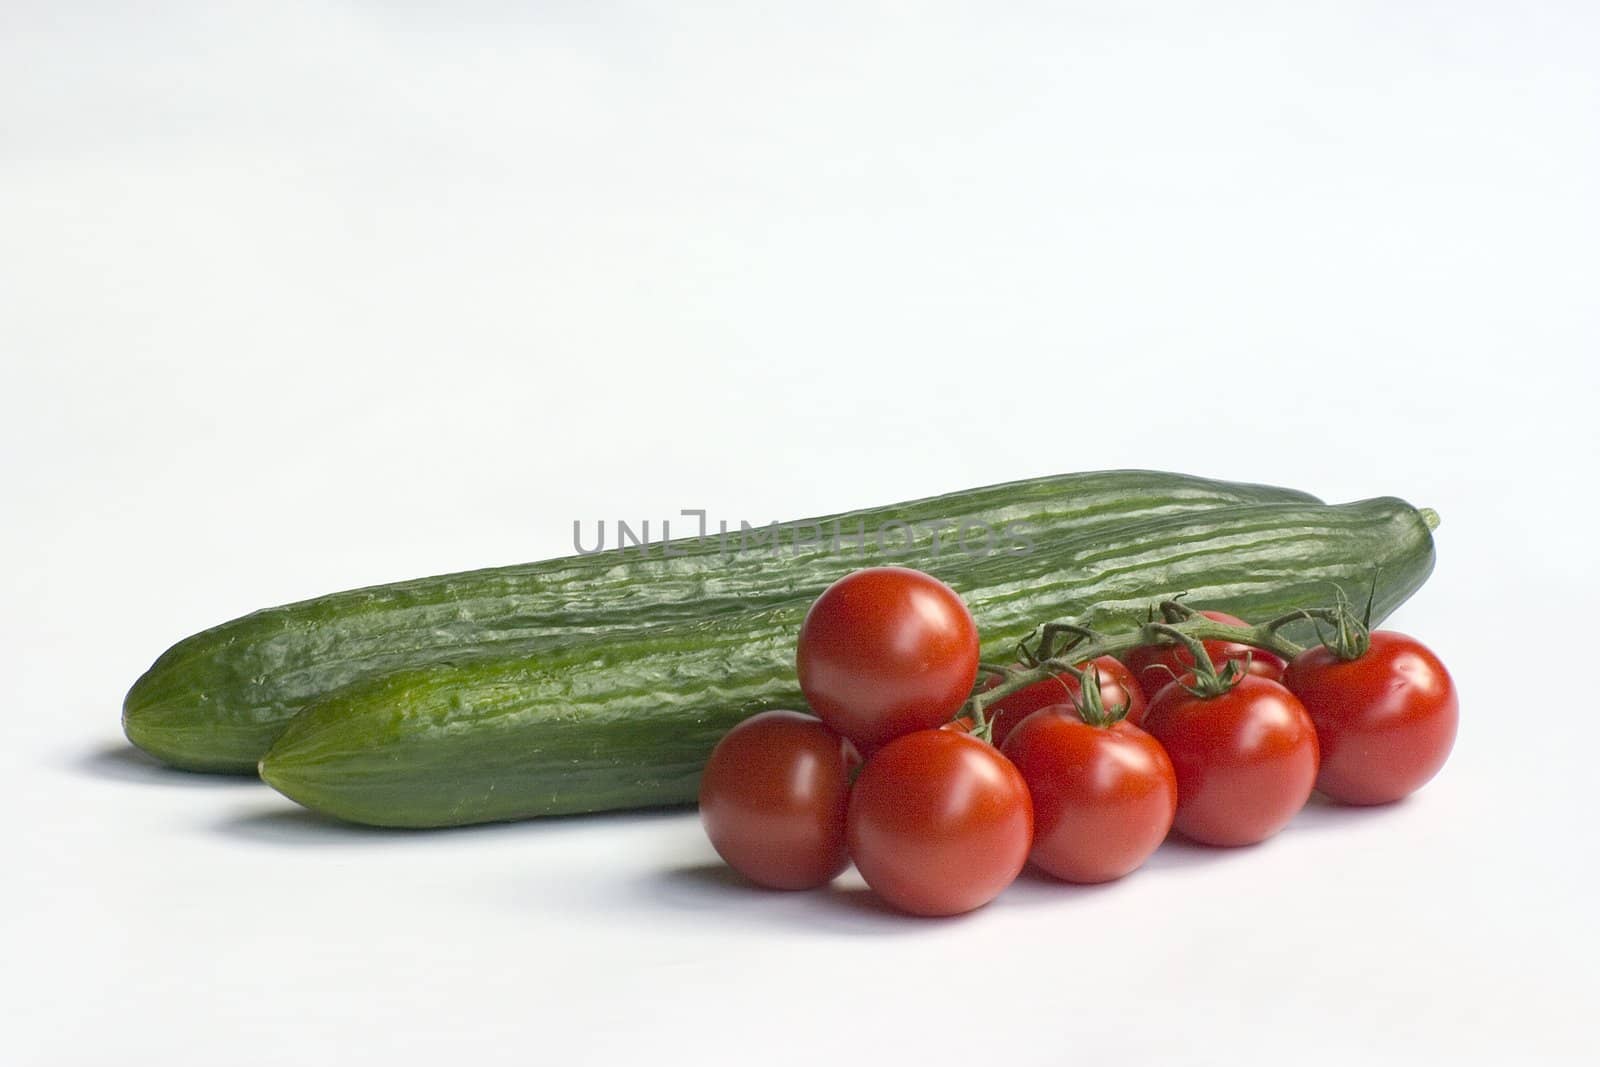 cucumbers by miradrozdowski